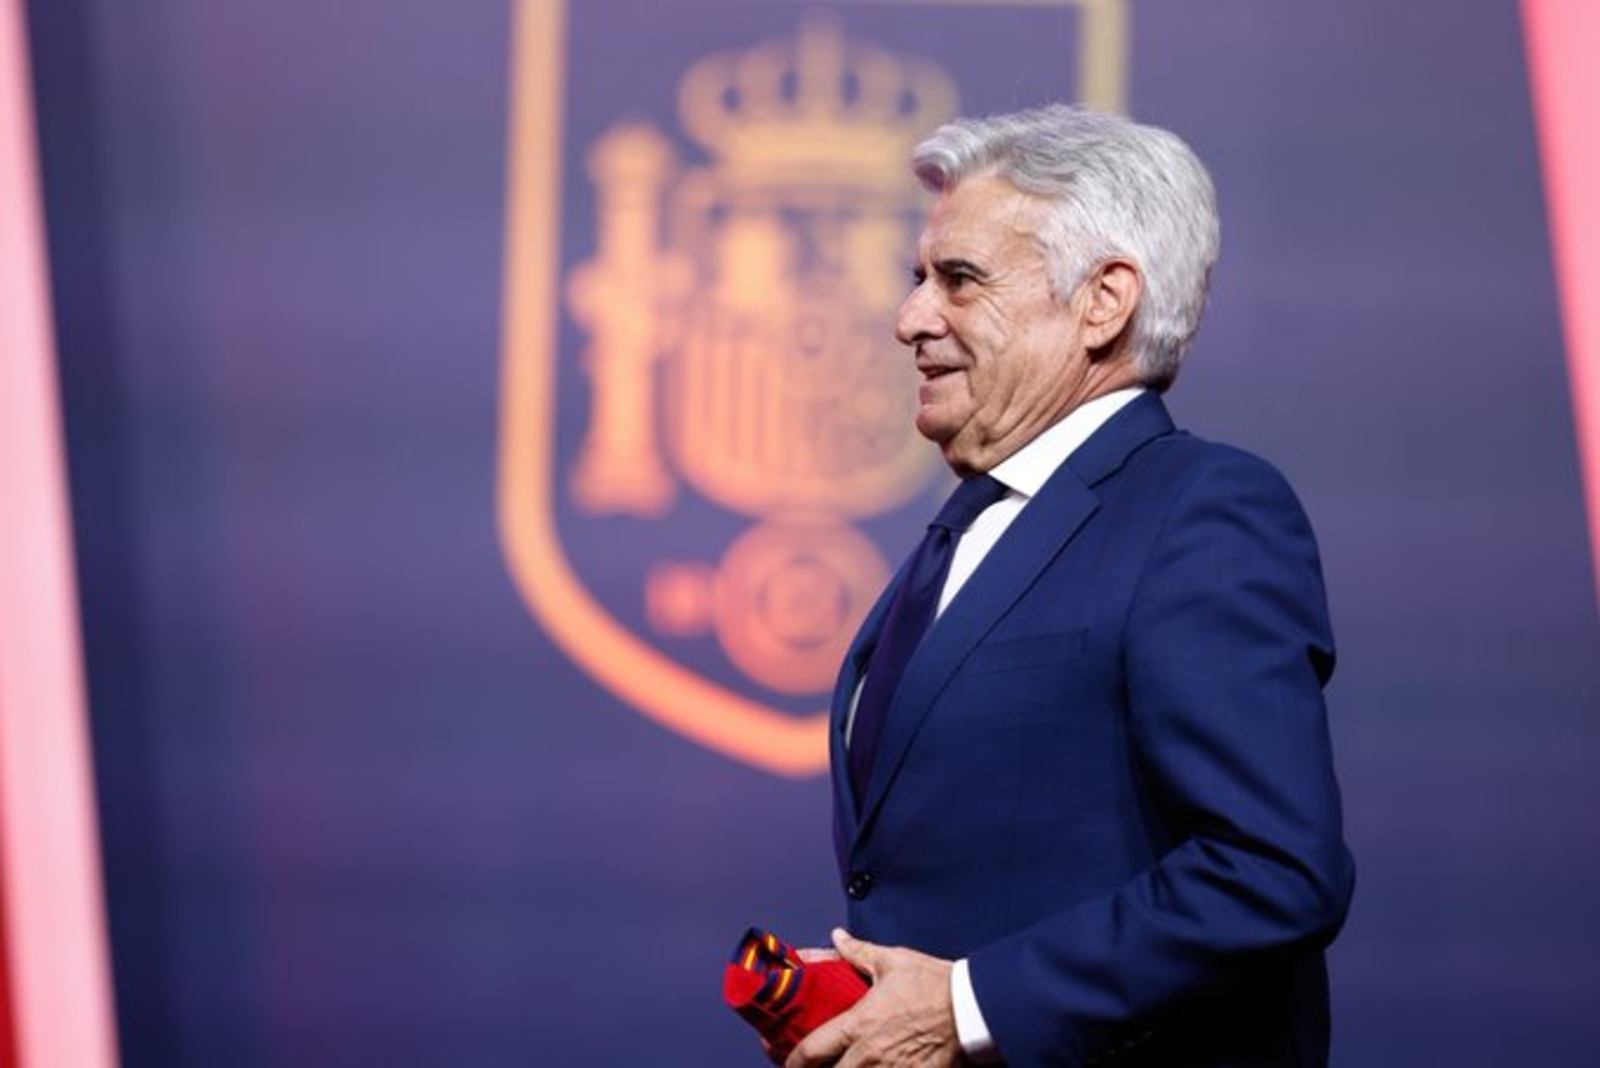 انتخاب رئيس جديد على رأس الإتحاد الإسباني لكرة القدم